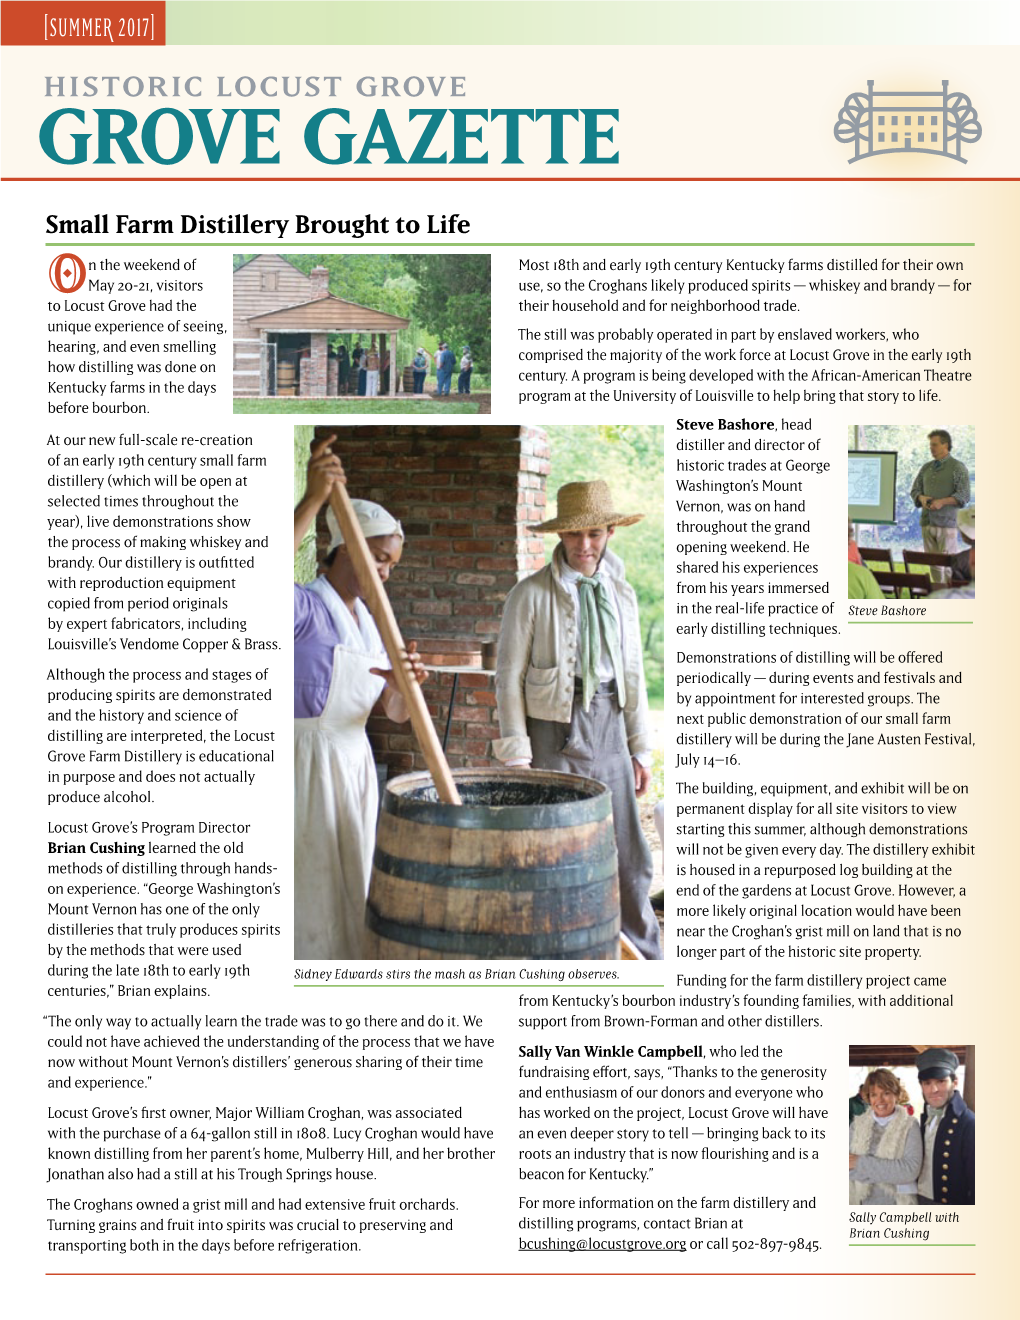 Grove Gazette